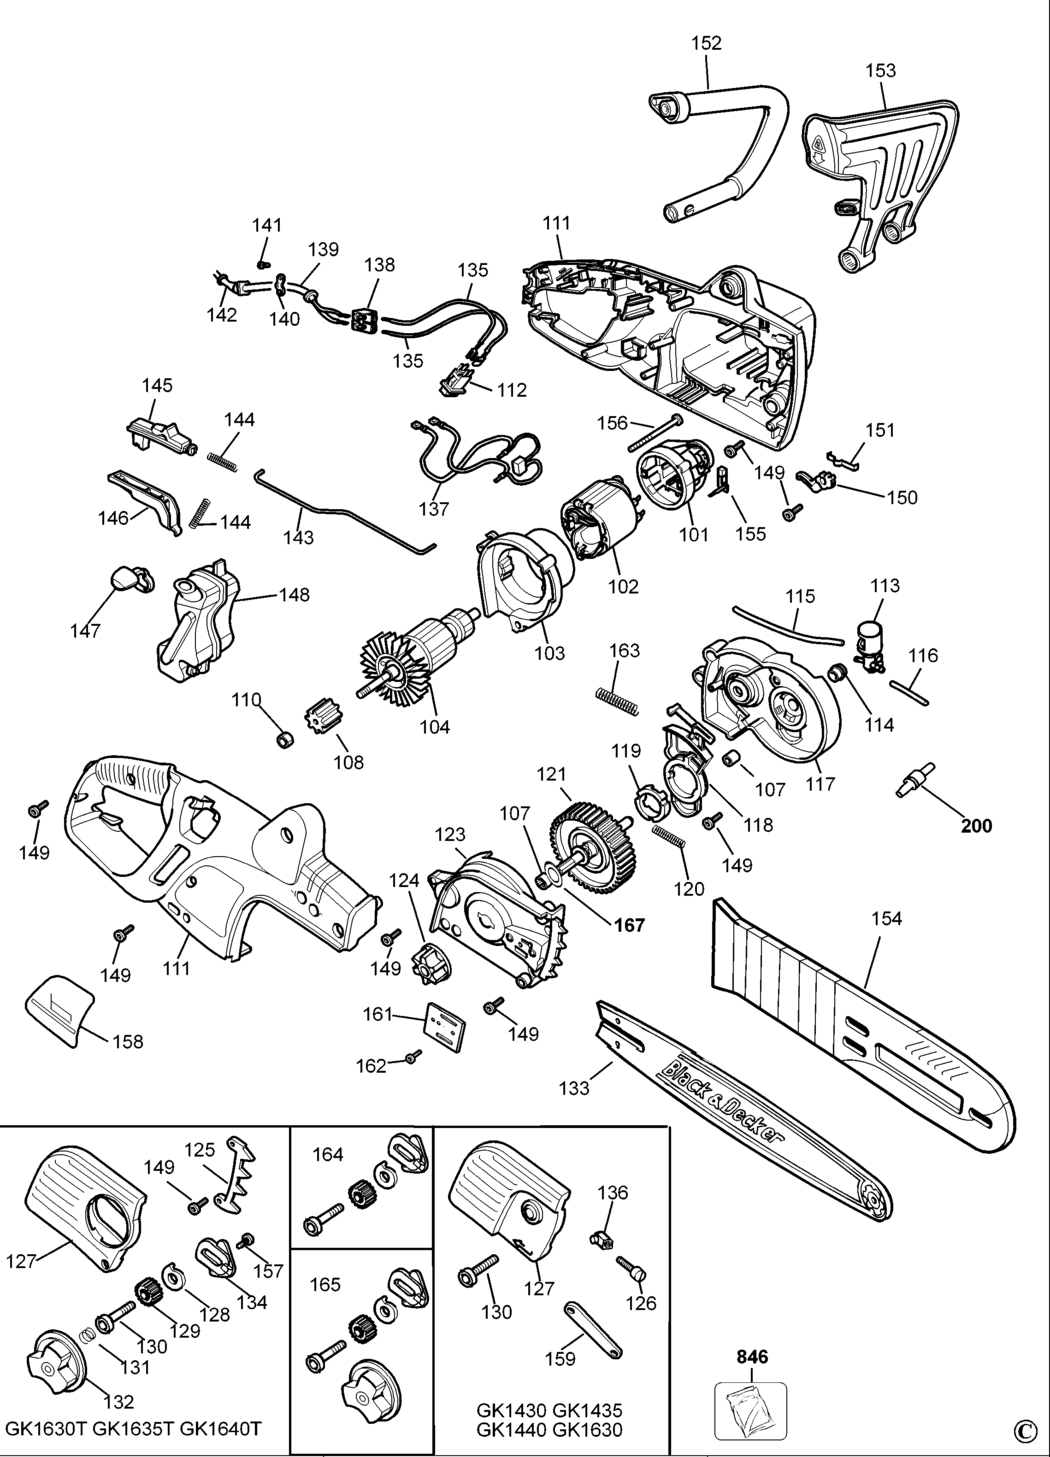 Black & Decker GK1630 Type 1 Chainsaw Spare Parts